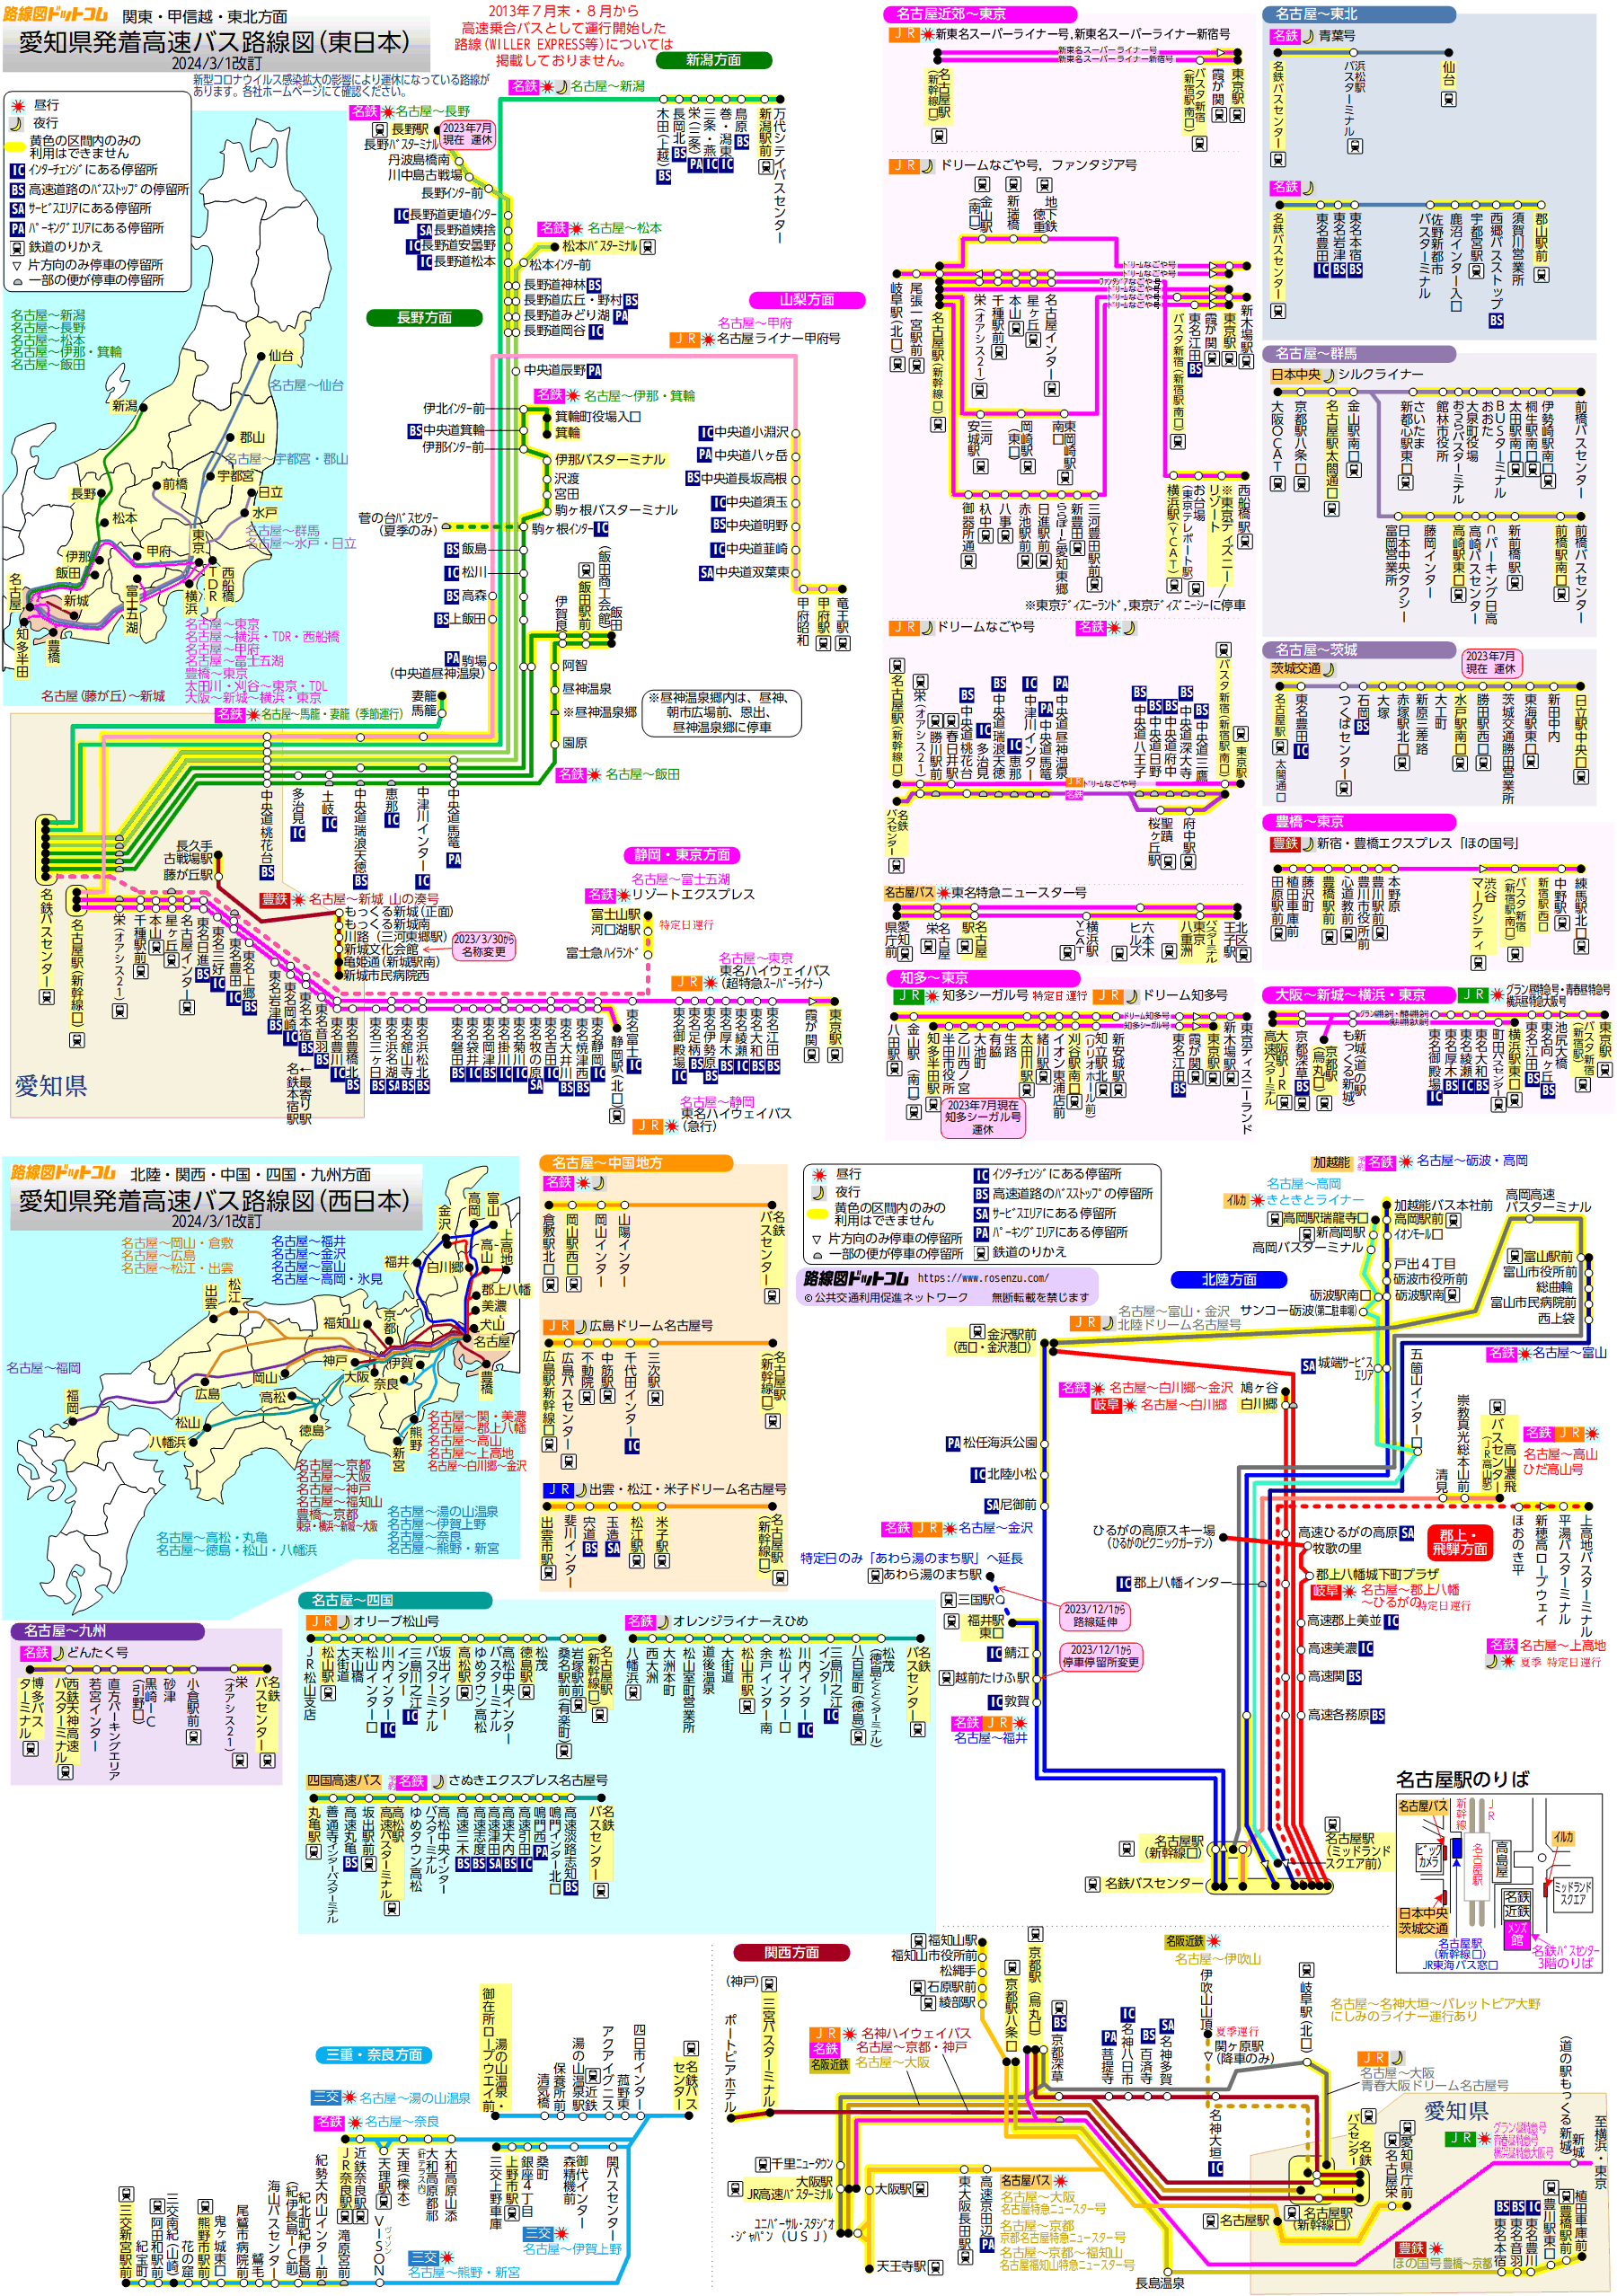 新 京成 バス 路線 図